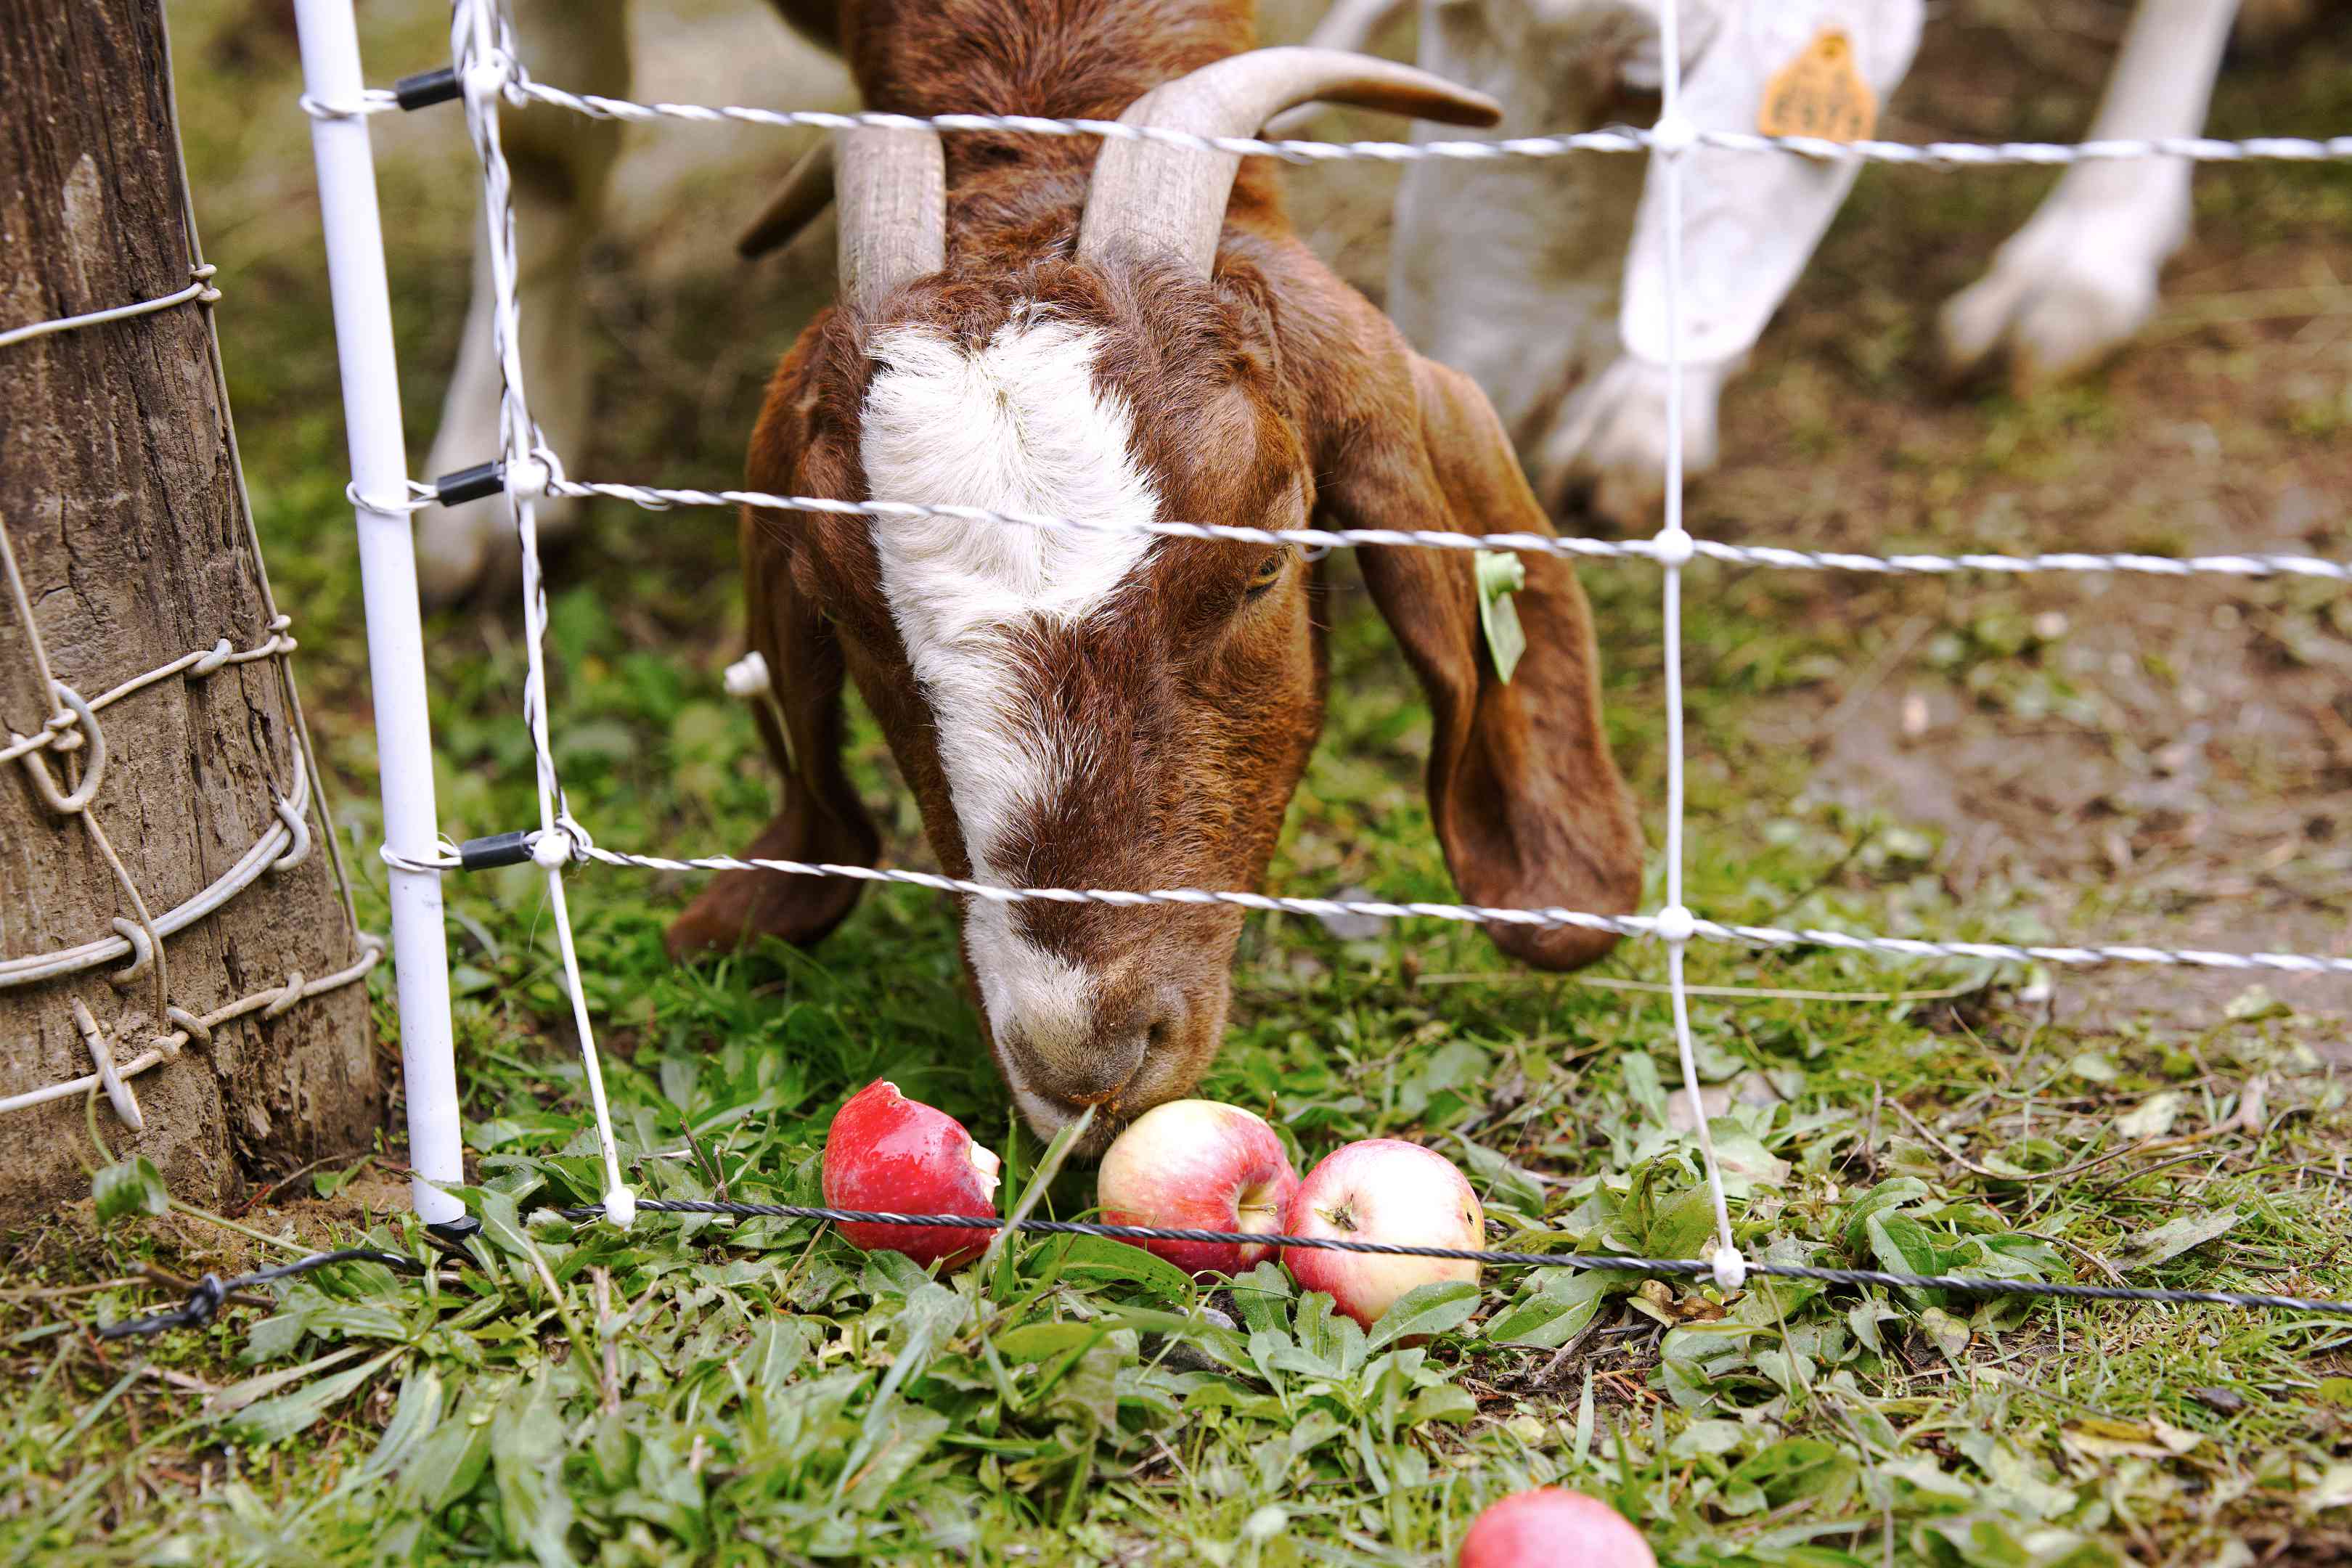 棕色的山羊和喇叭吃在电线围栏附近的地面上的淡粉色苹果